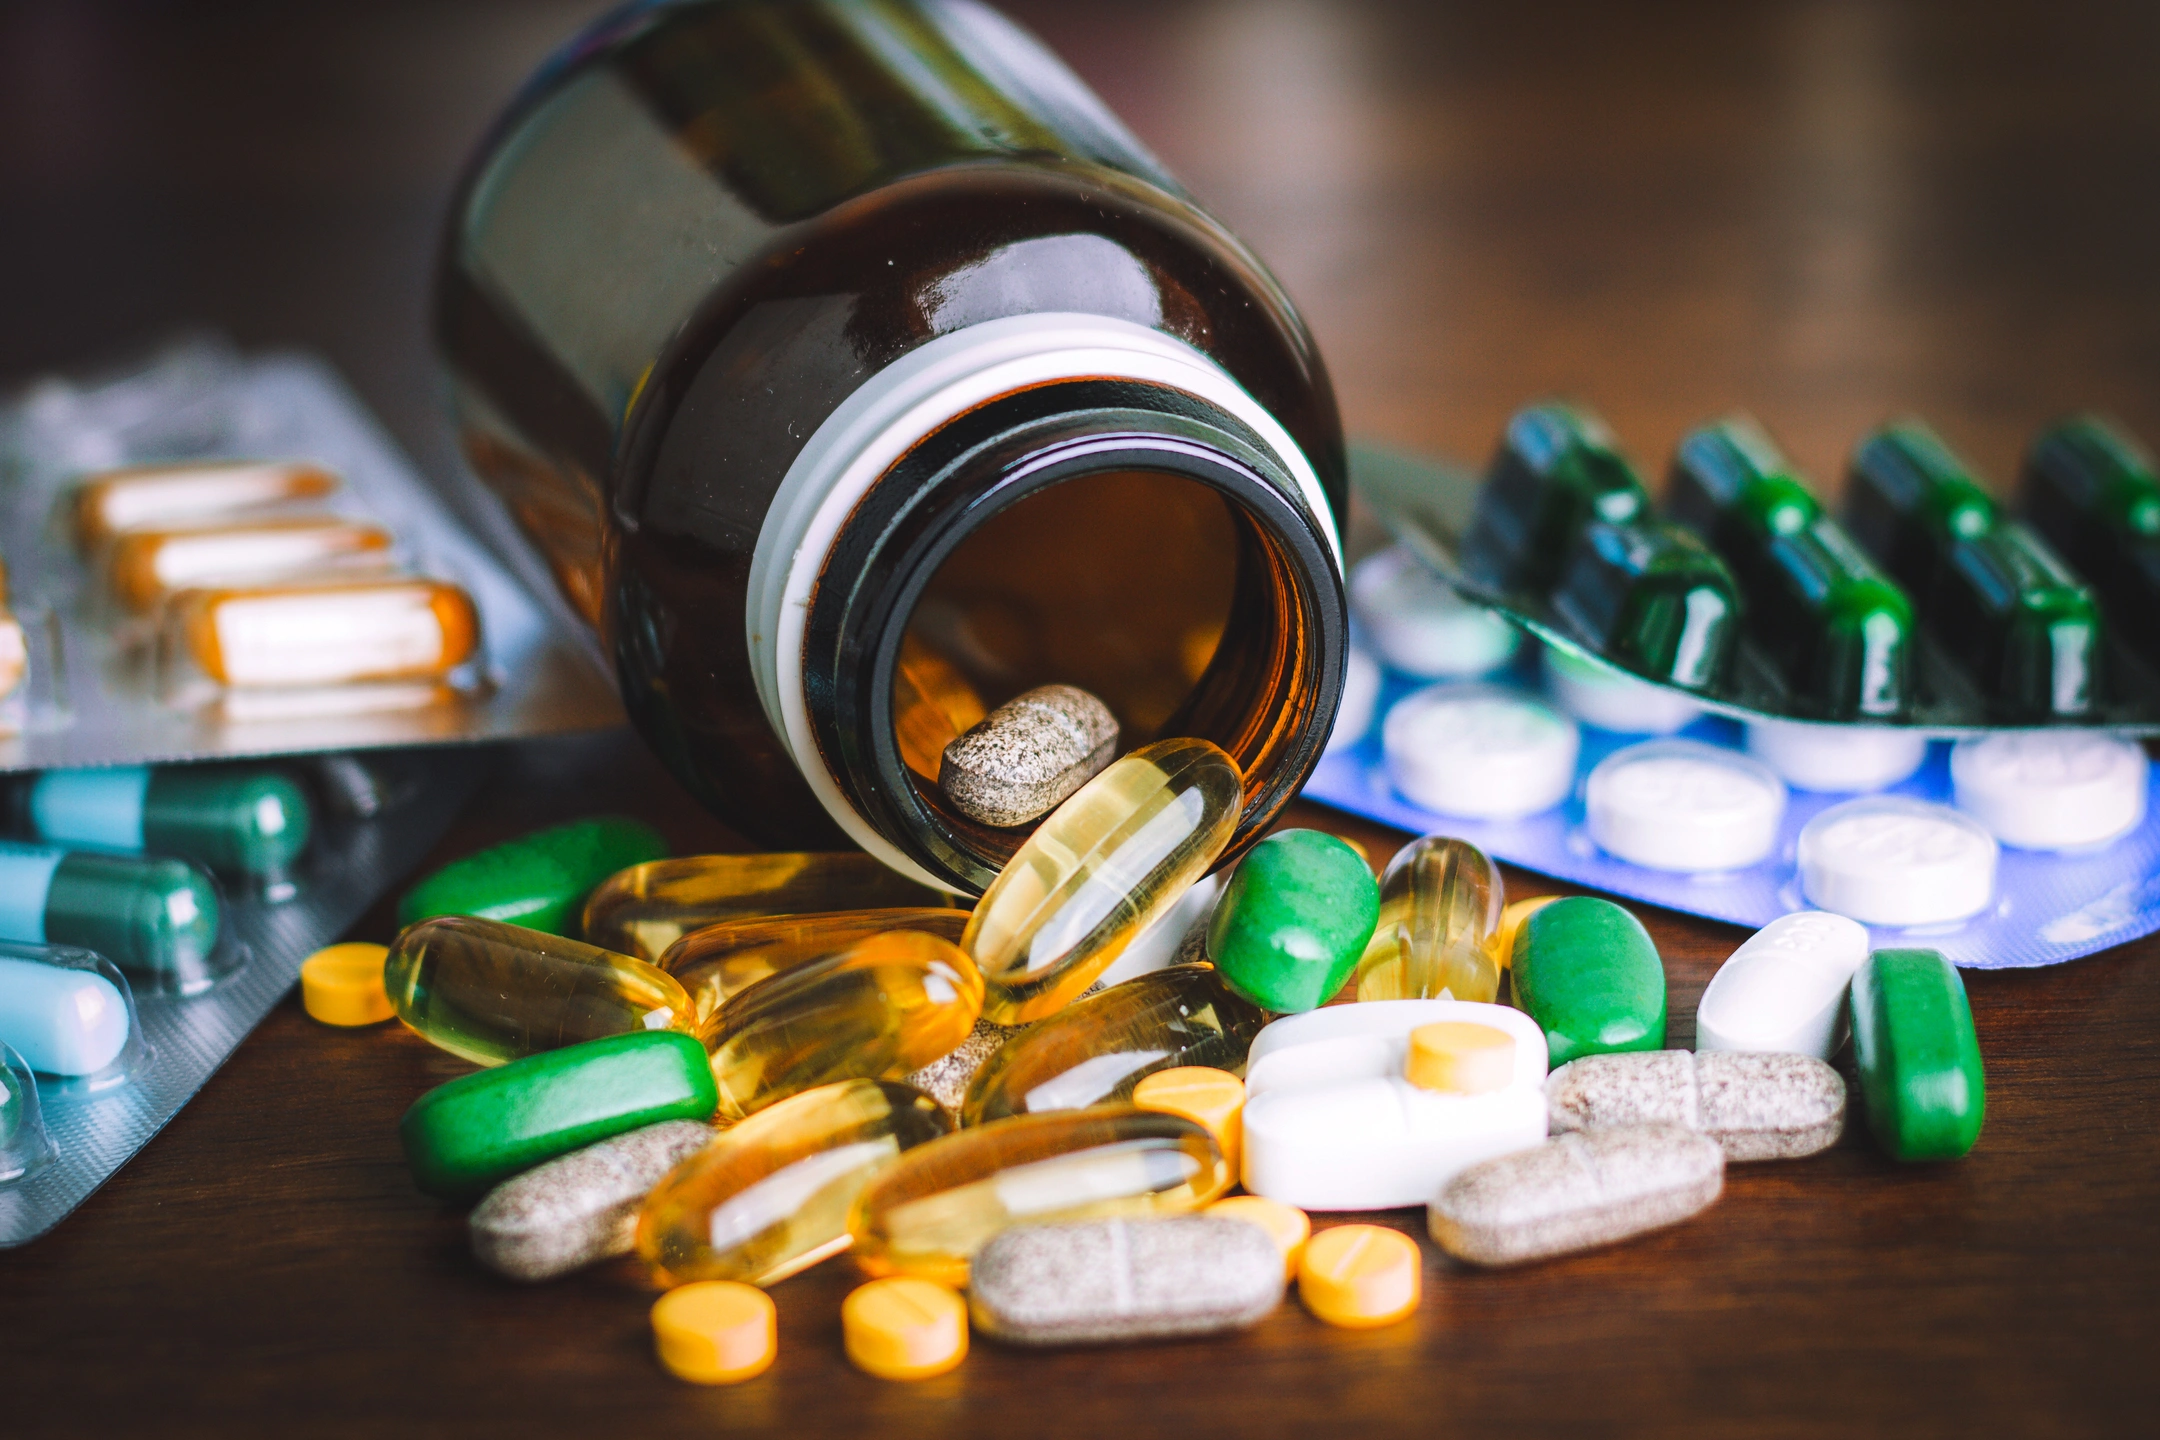 Кардиолог Закиев: аспирин без назначения врача может вызвать инсульт